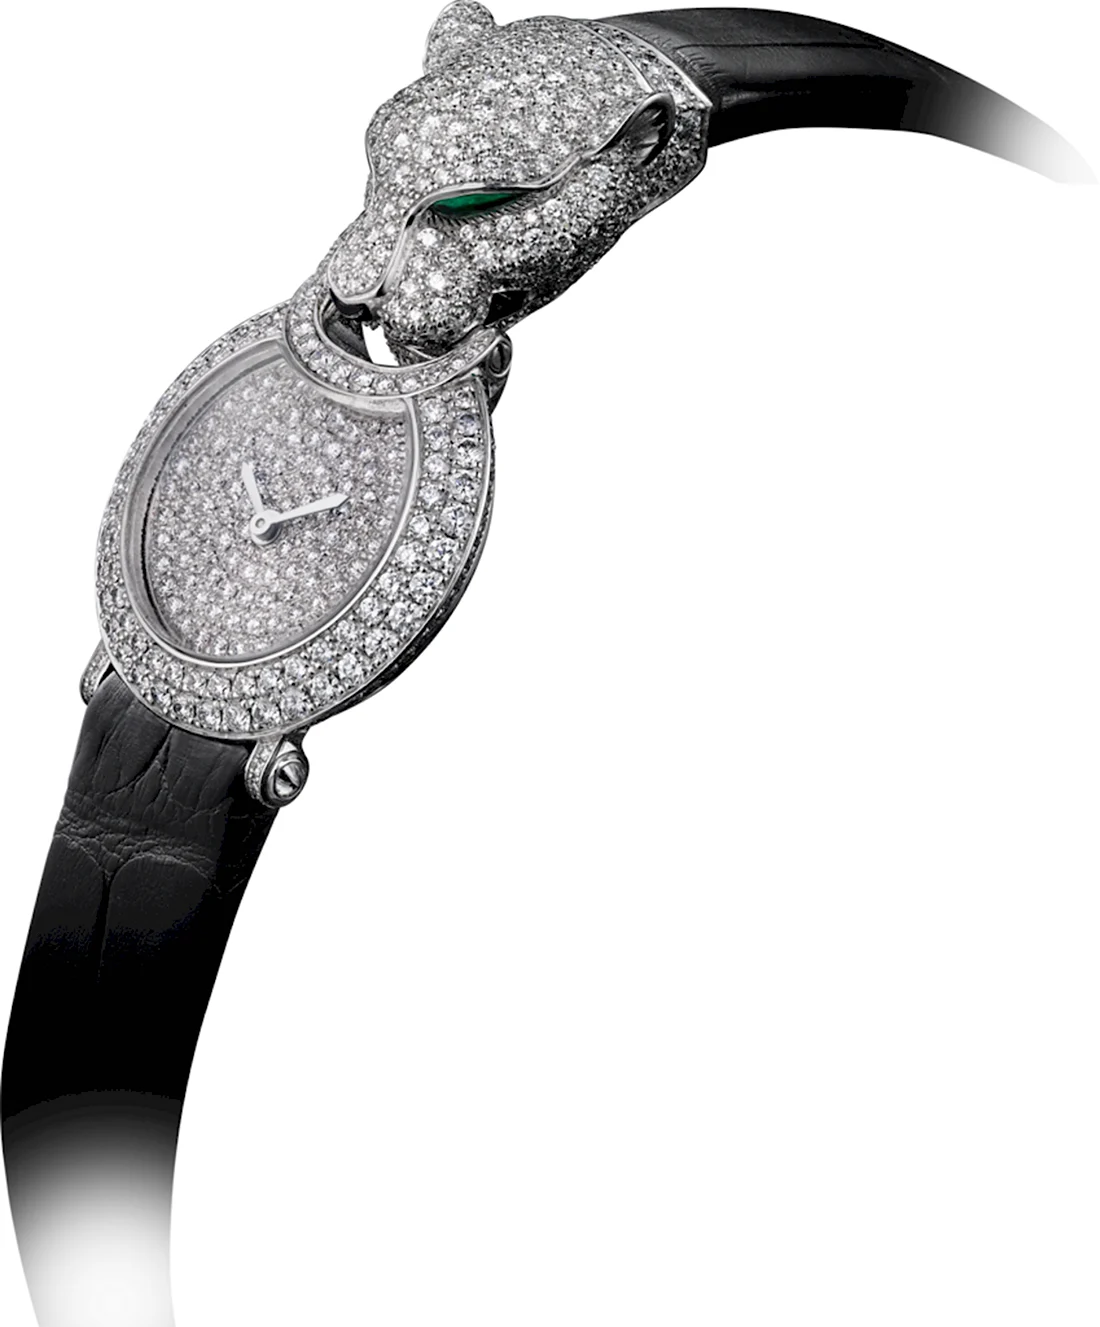 Cartier Panthere часы Diamonds